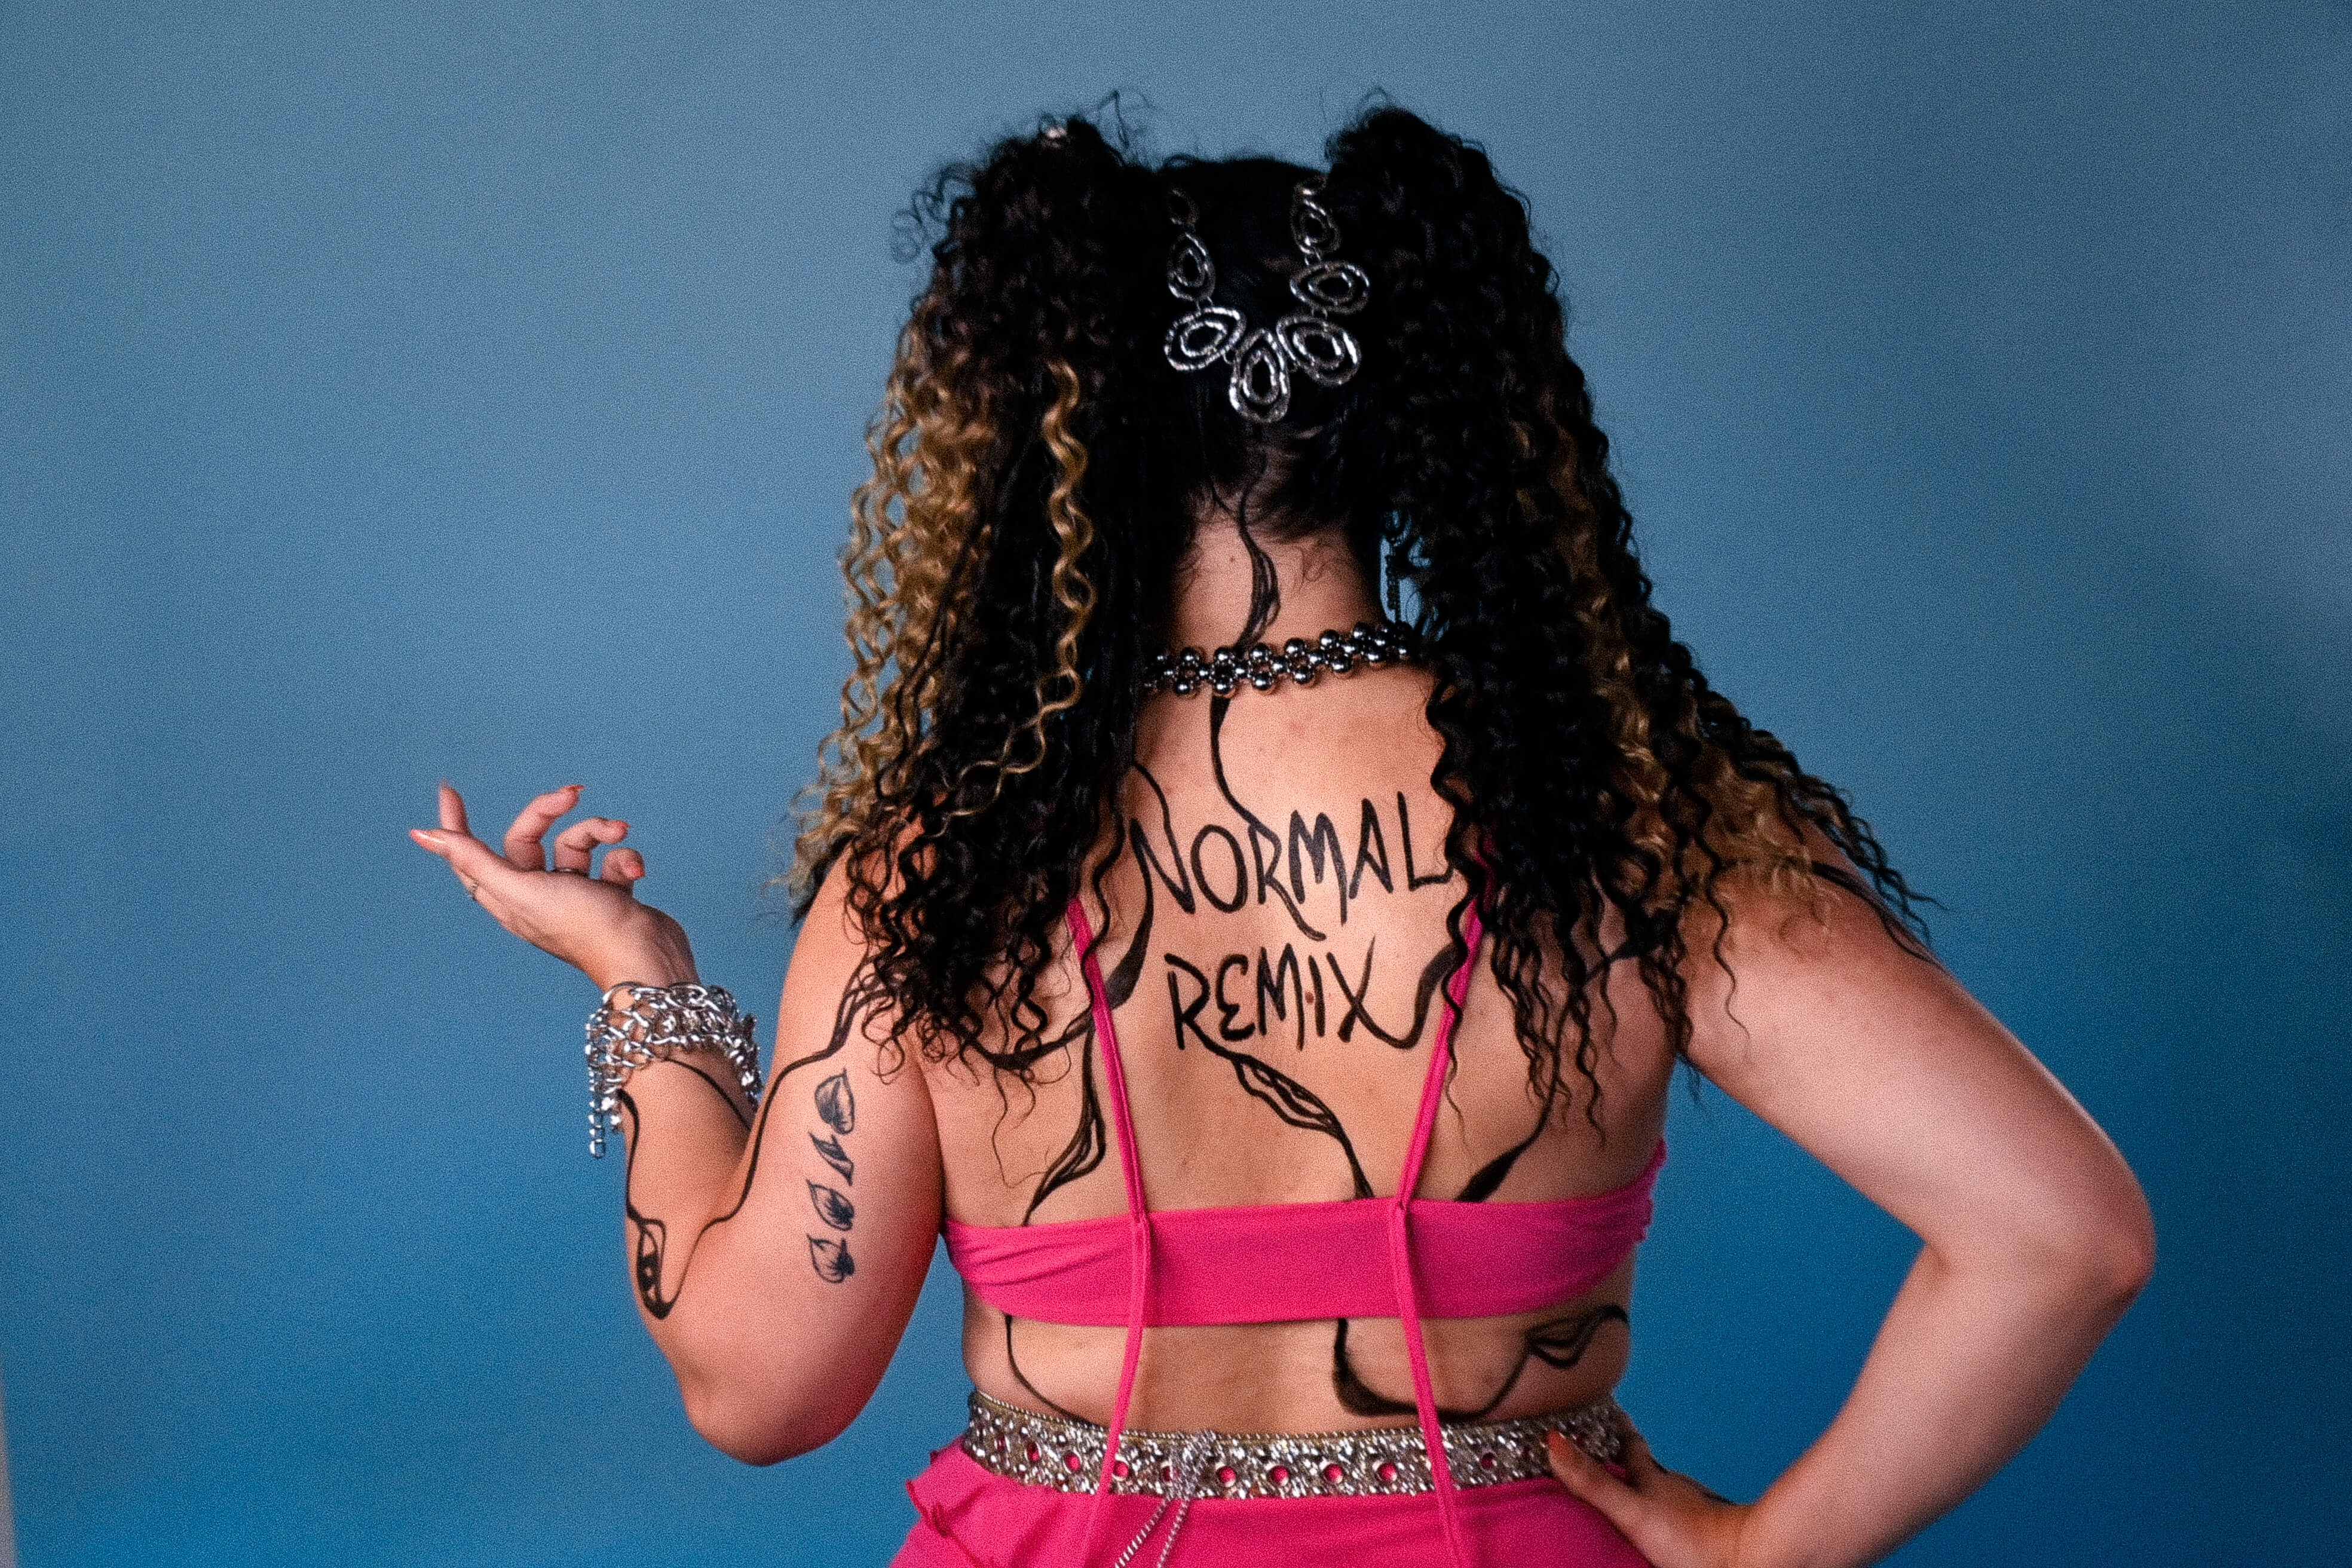 Capa de post: Leffs lança novo single, “Normal Remix”, nas plataformas digitais